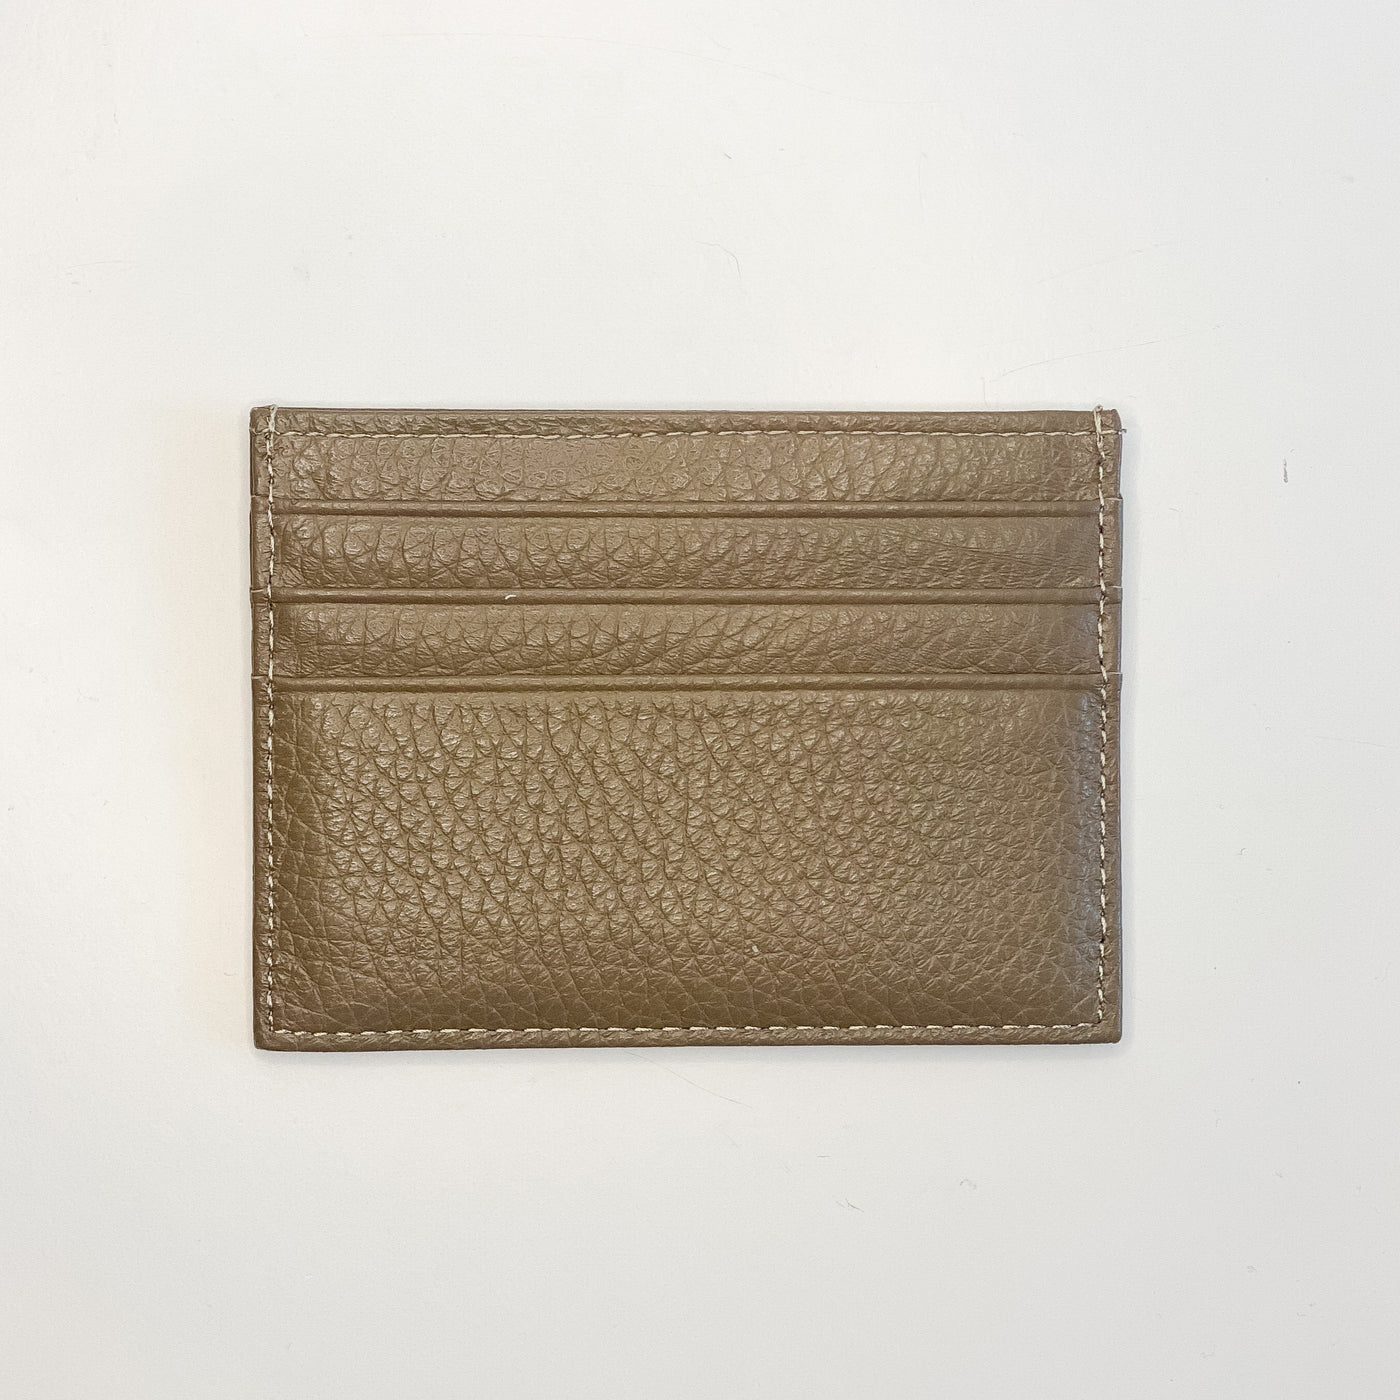 Leather Card Holder - Danshire Market and Design 